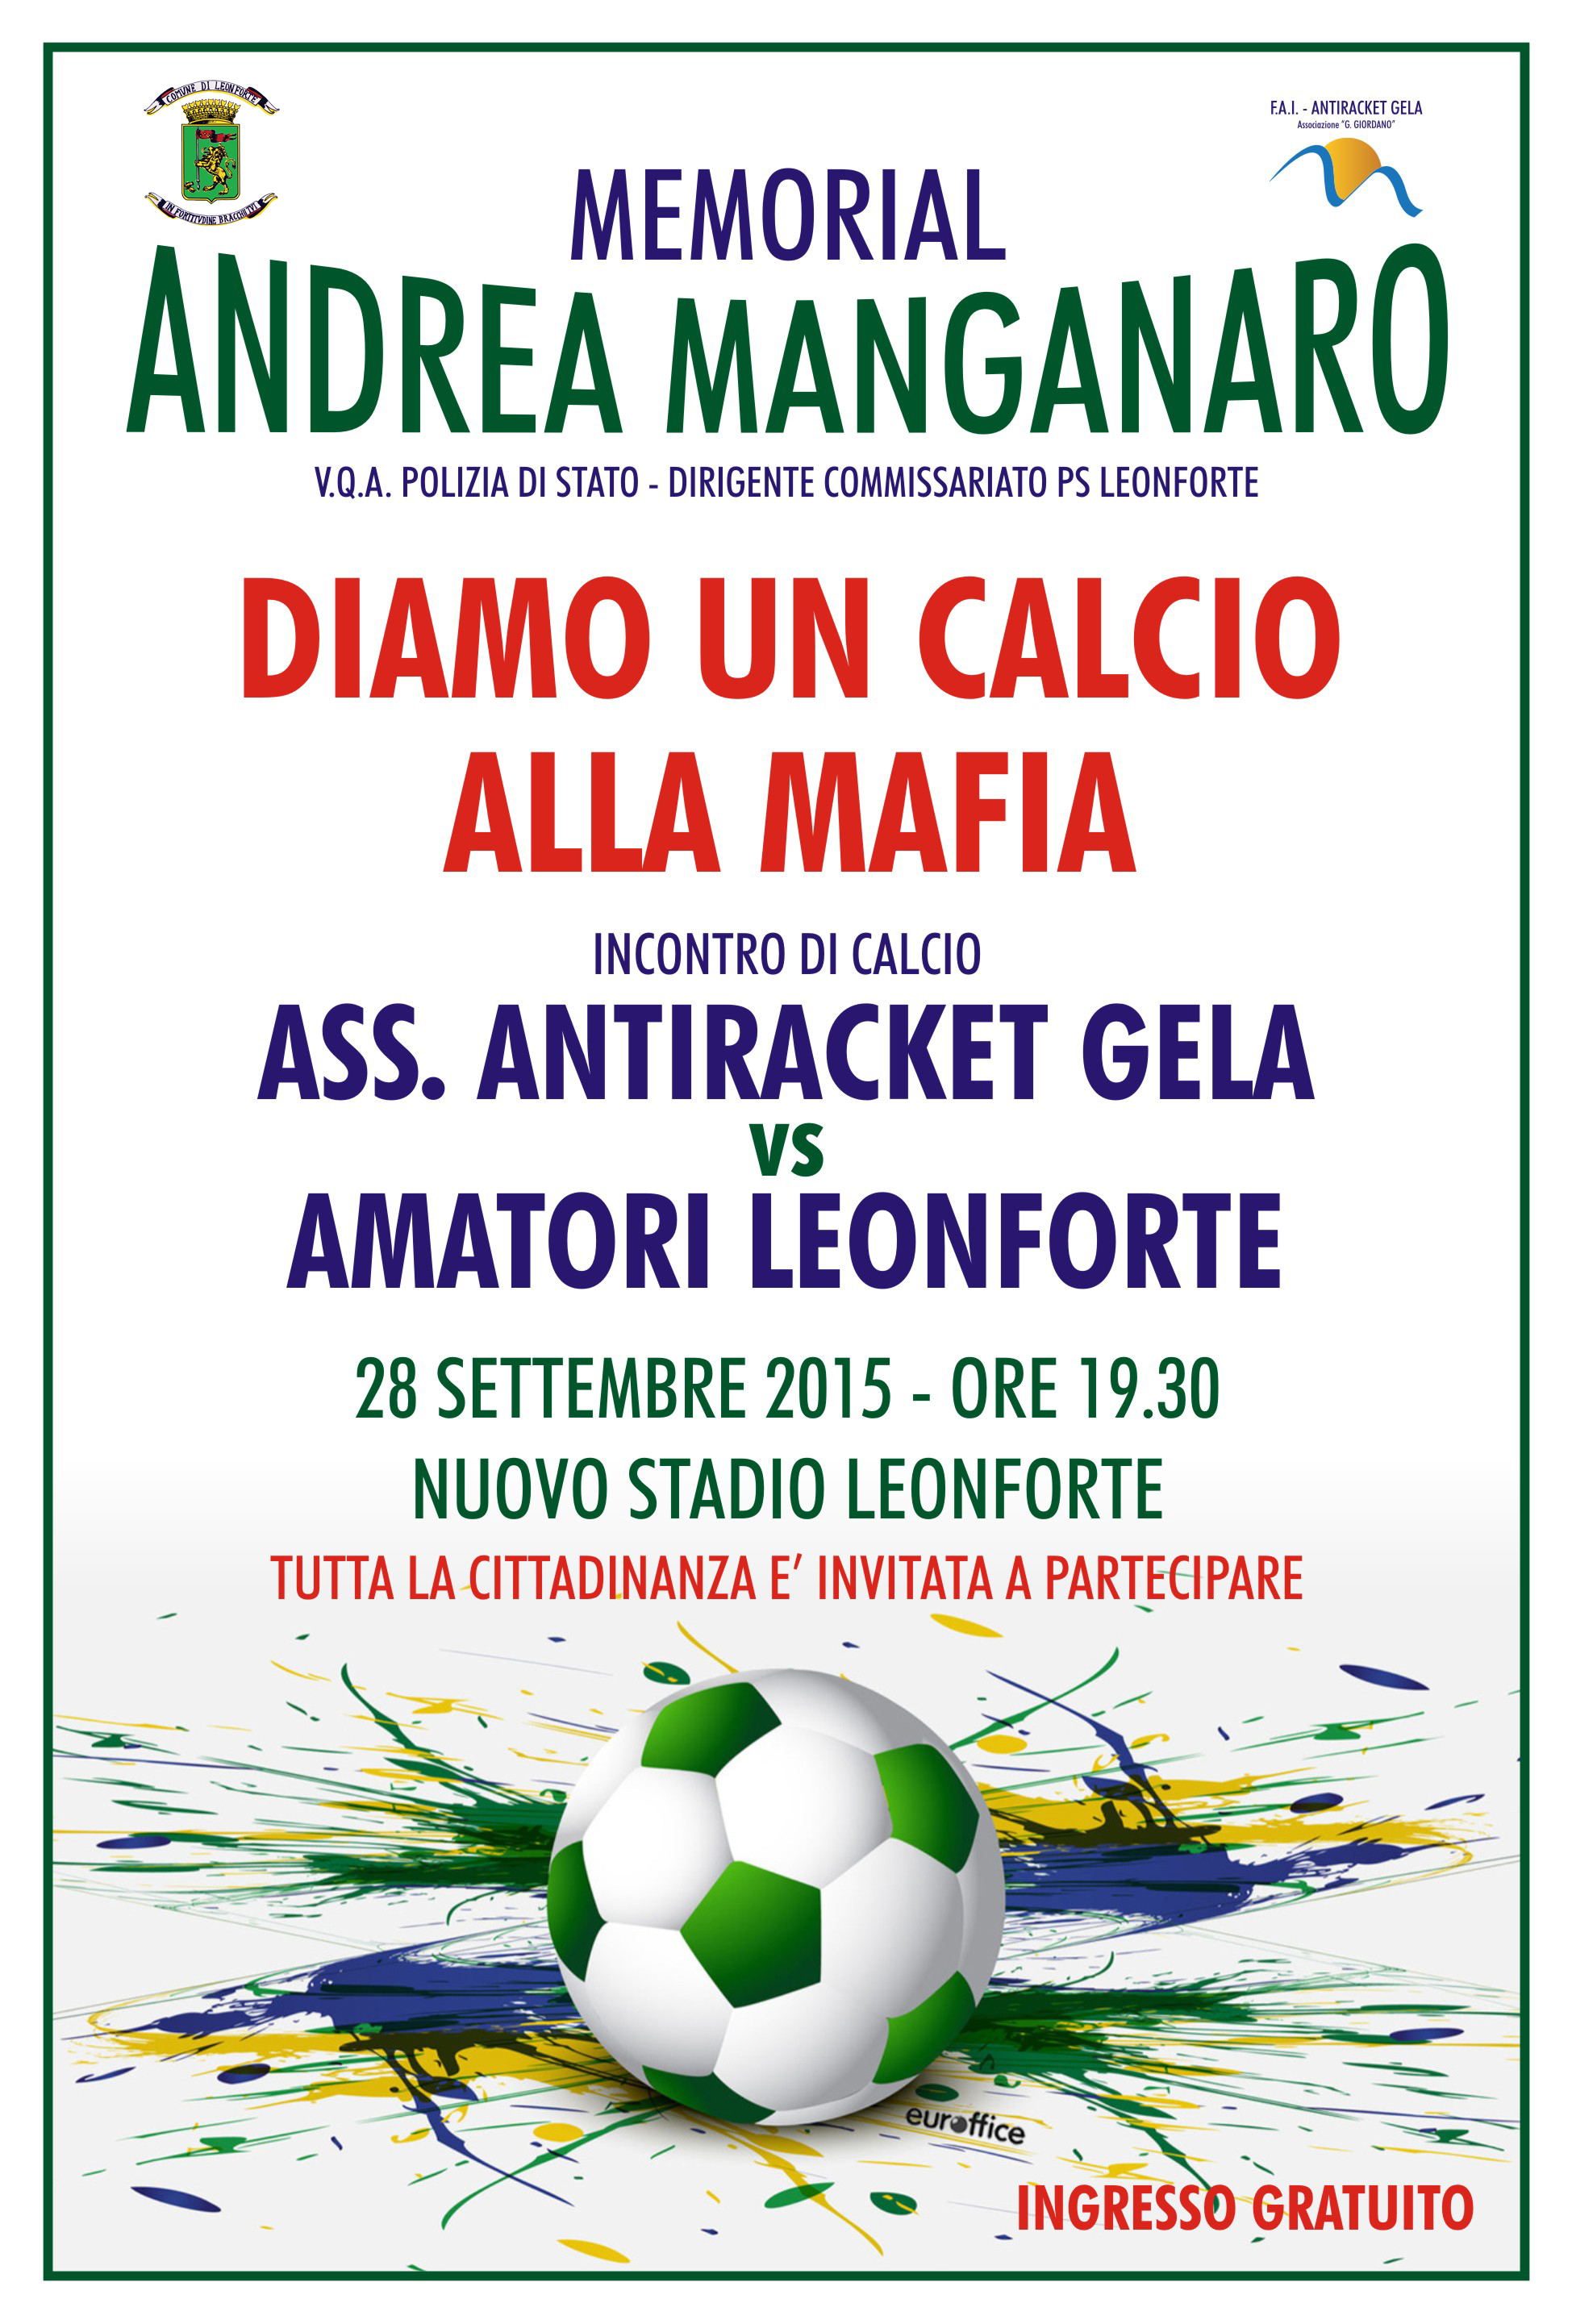 Diamo un calcio alla mafia – Memorial Andrea Manganaro